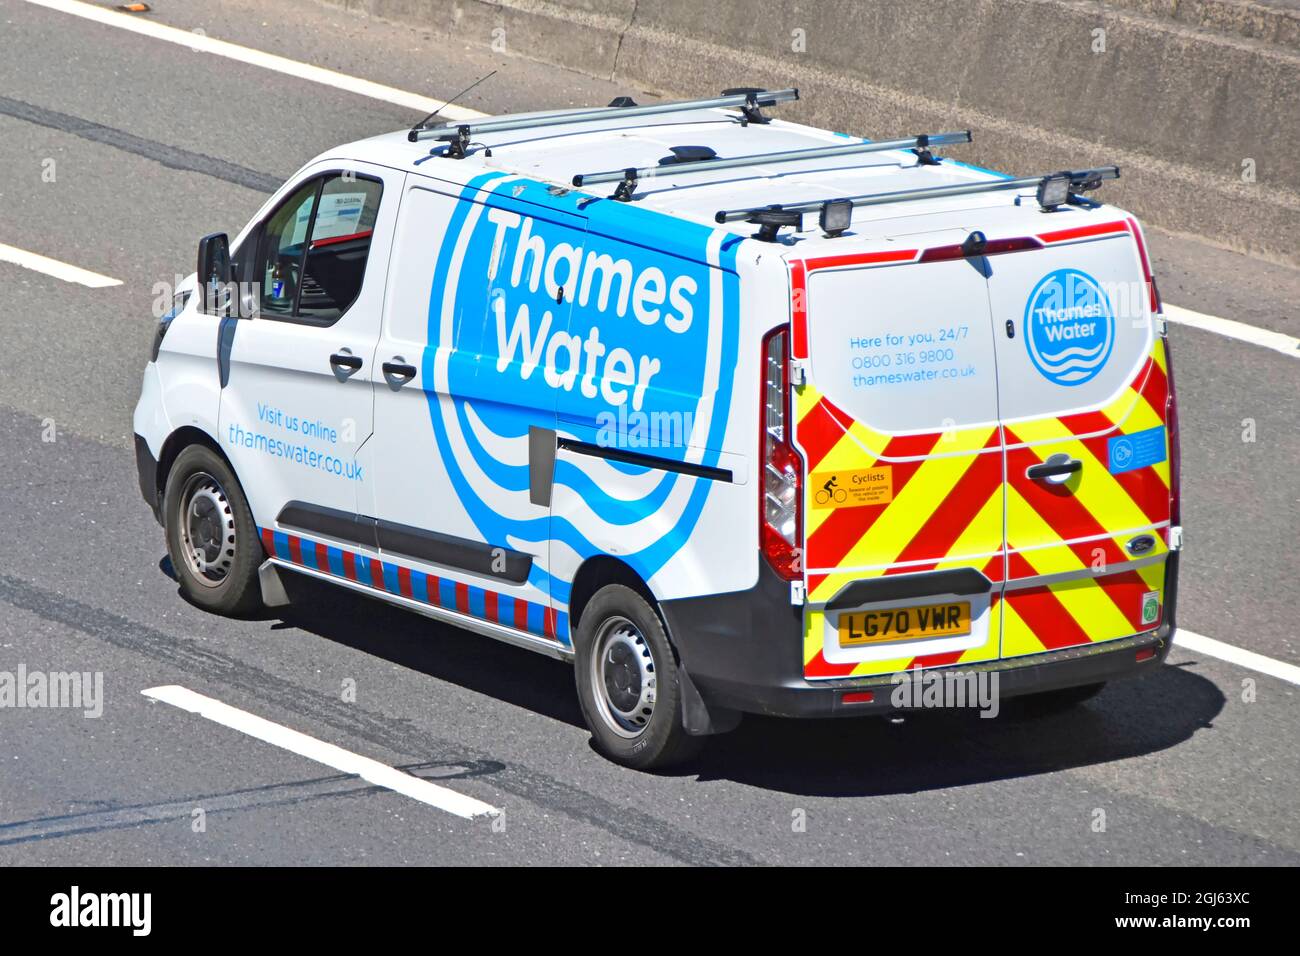 Vue rapprochée du dos et des côtés d'une fourgonnette Thames Water avec logos bleus sur l'autoroute britannique bandes de sécurité arrière réfléchissantes haute visibilité Angleterre Royaume-Uni Banque D'Images